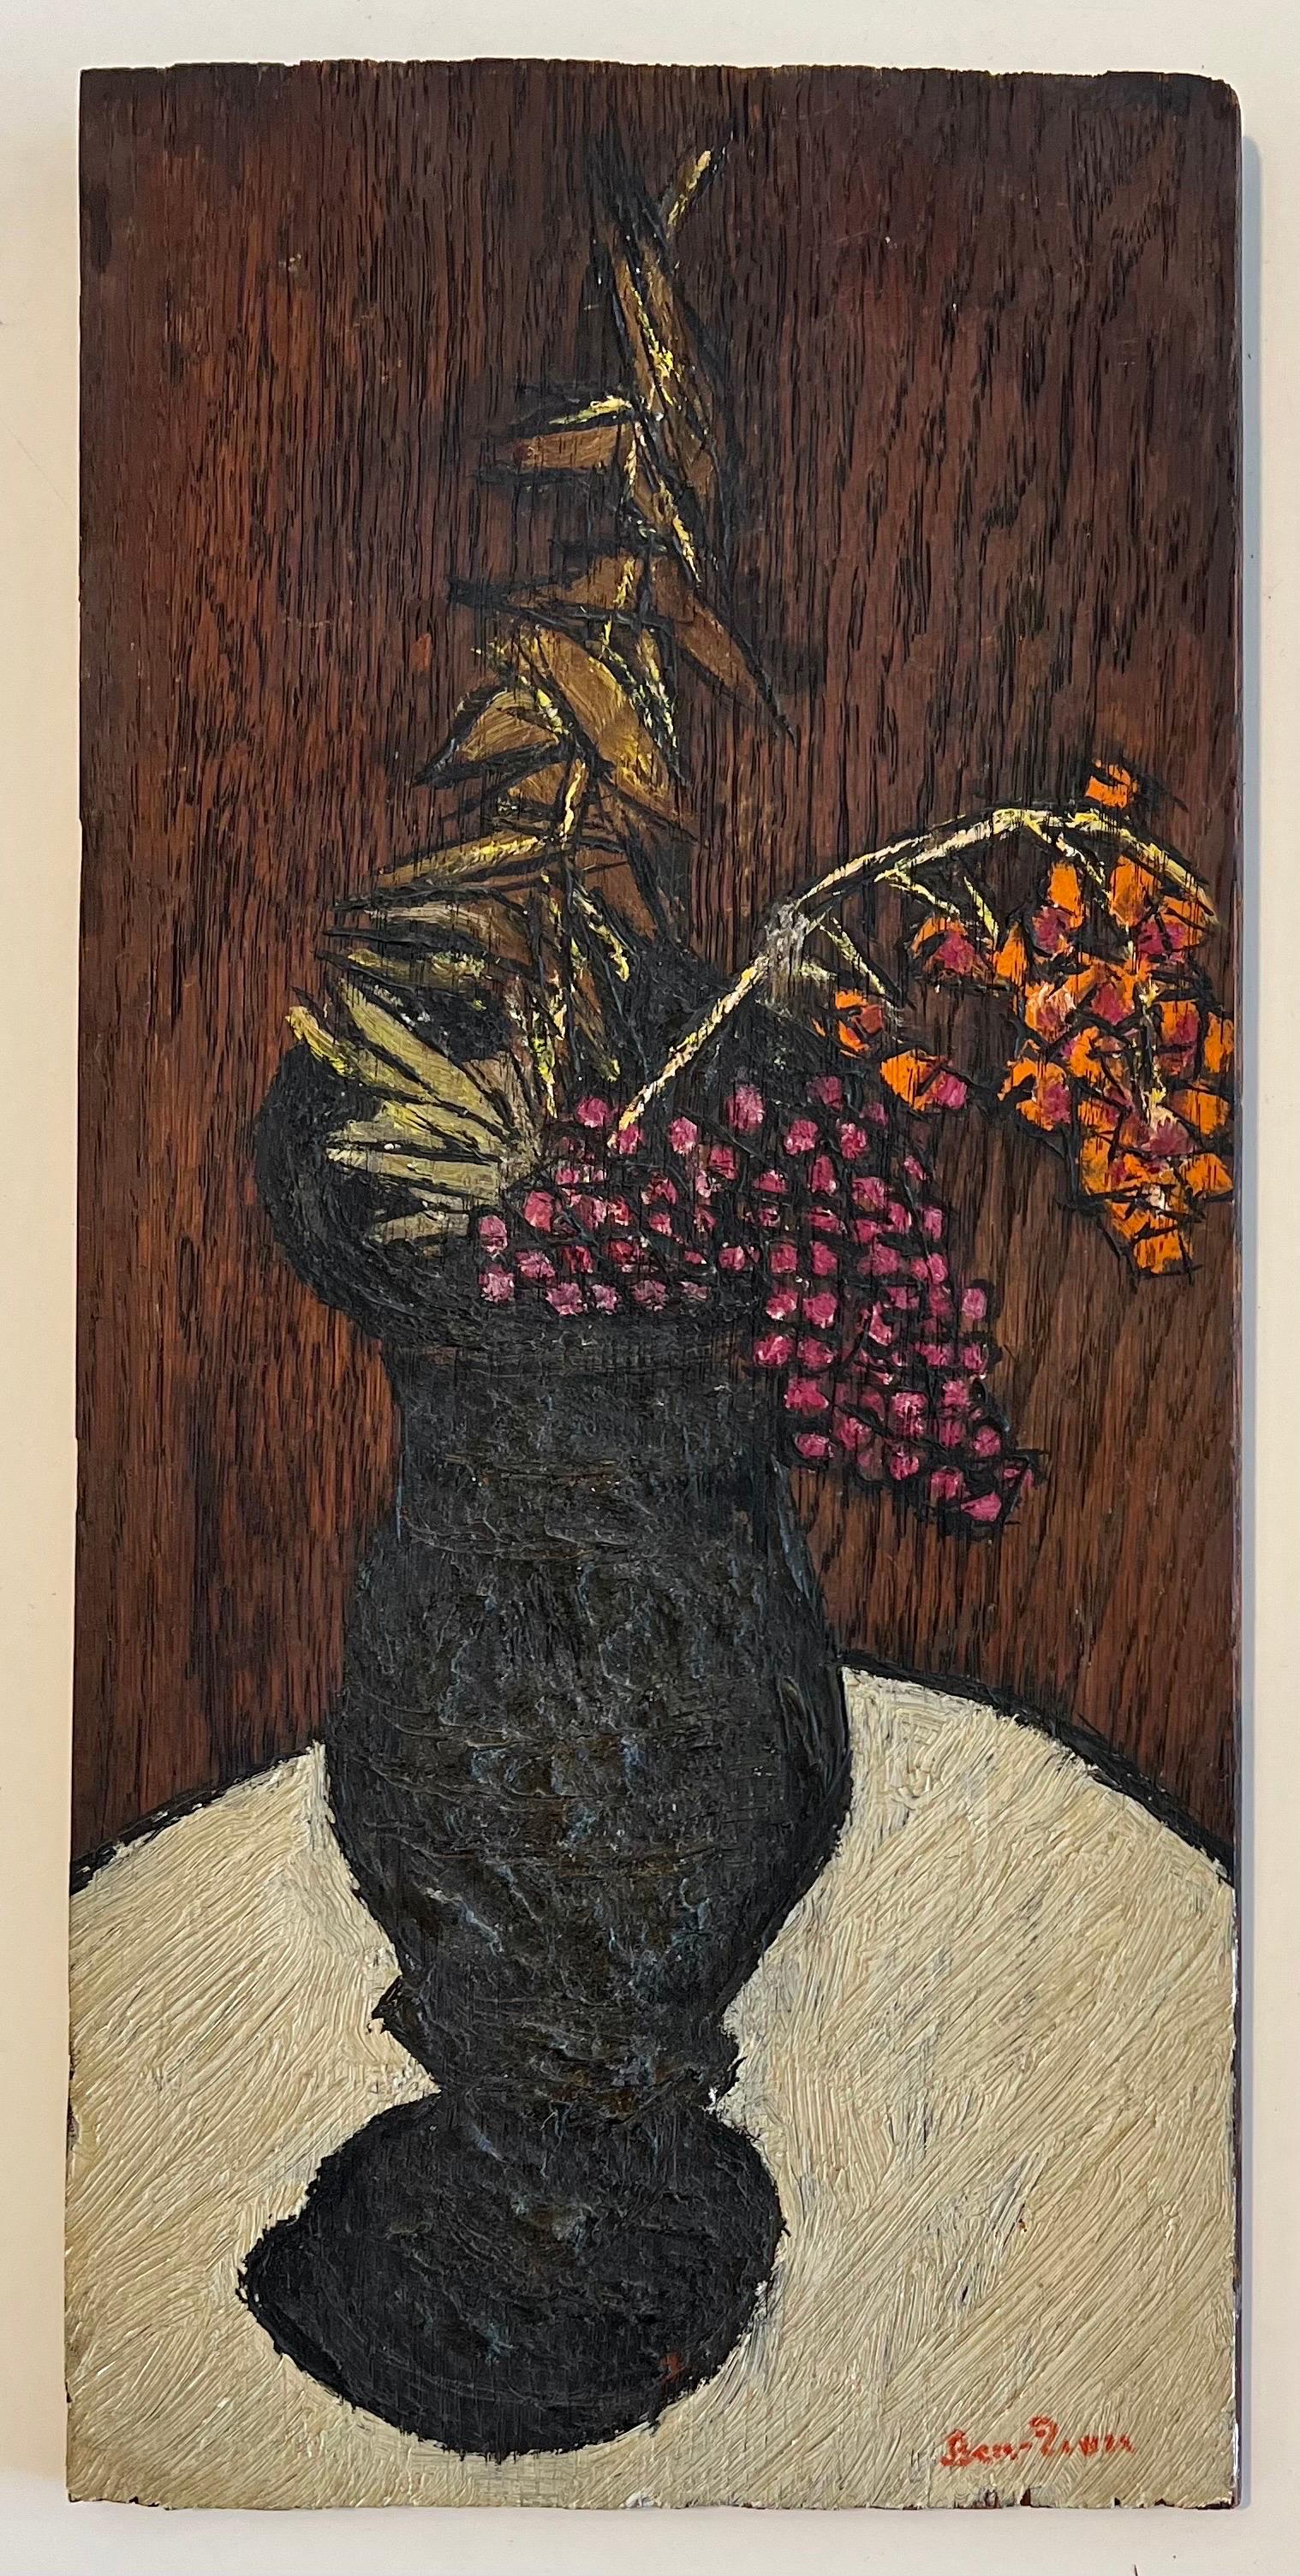 Ben-Zion (1897-1987) 
Pièce fleurie avec vase noir
Huile sur panneau, signée à la main  Ben-Zion 